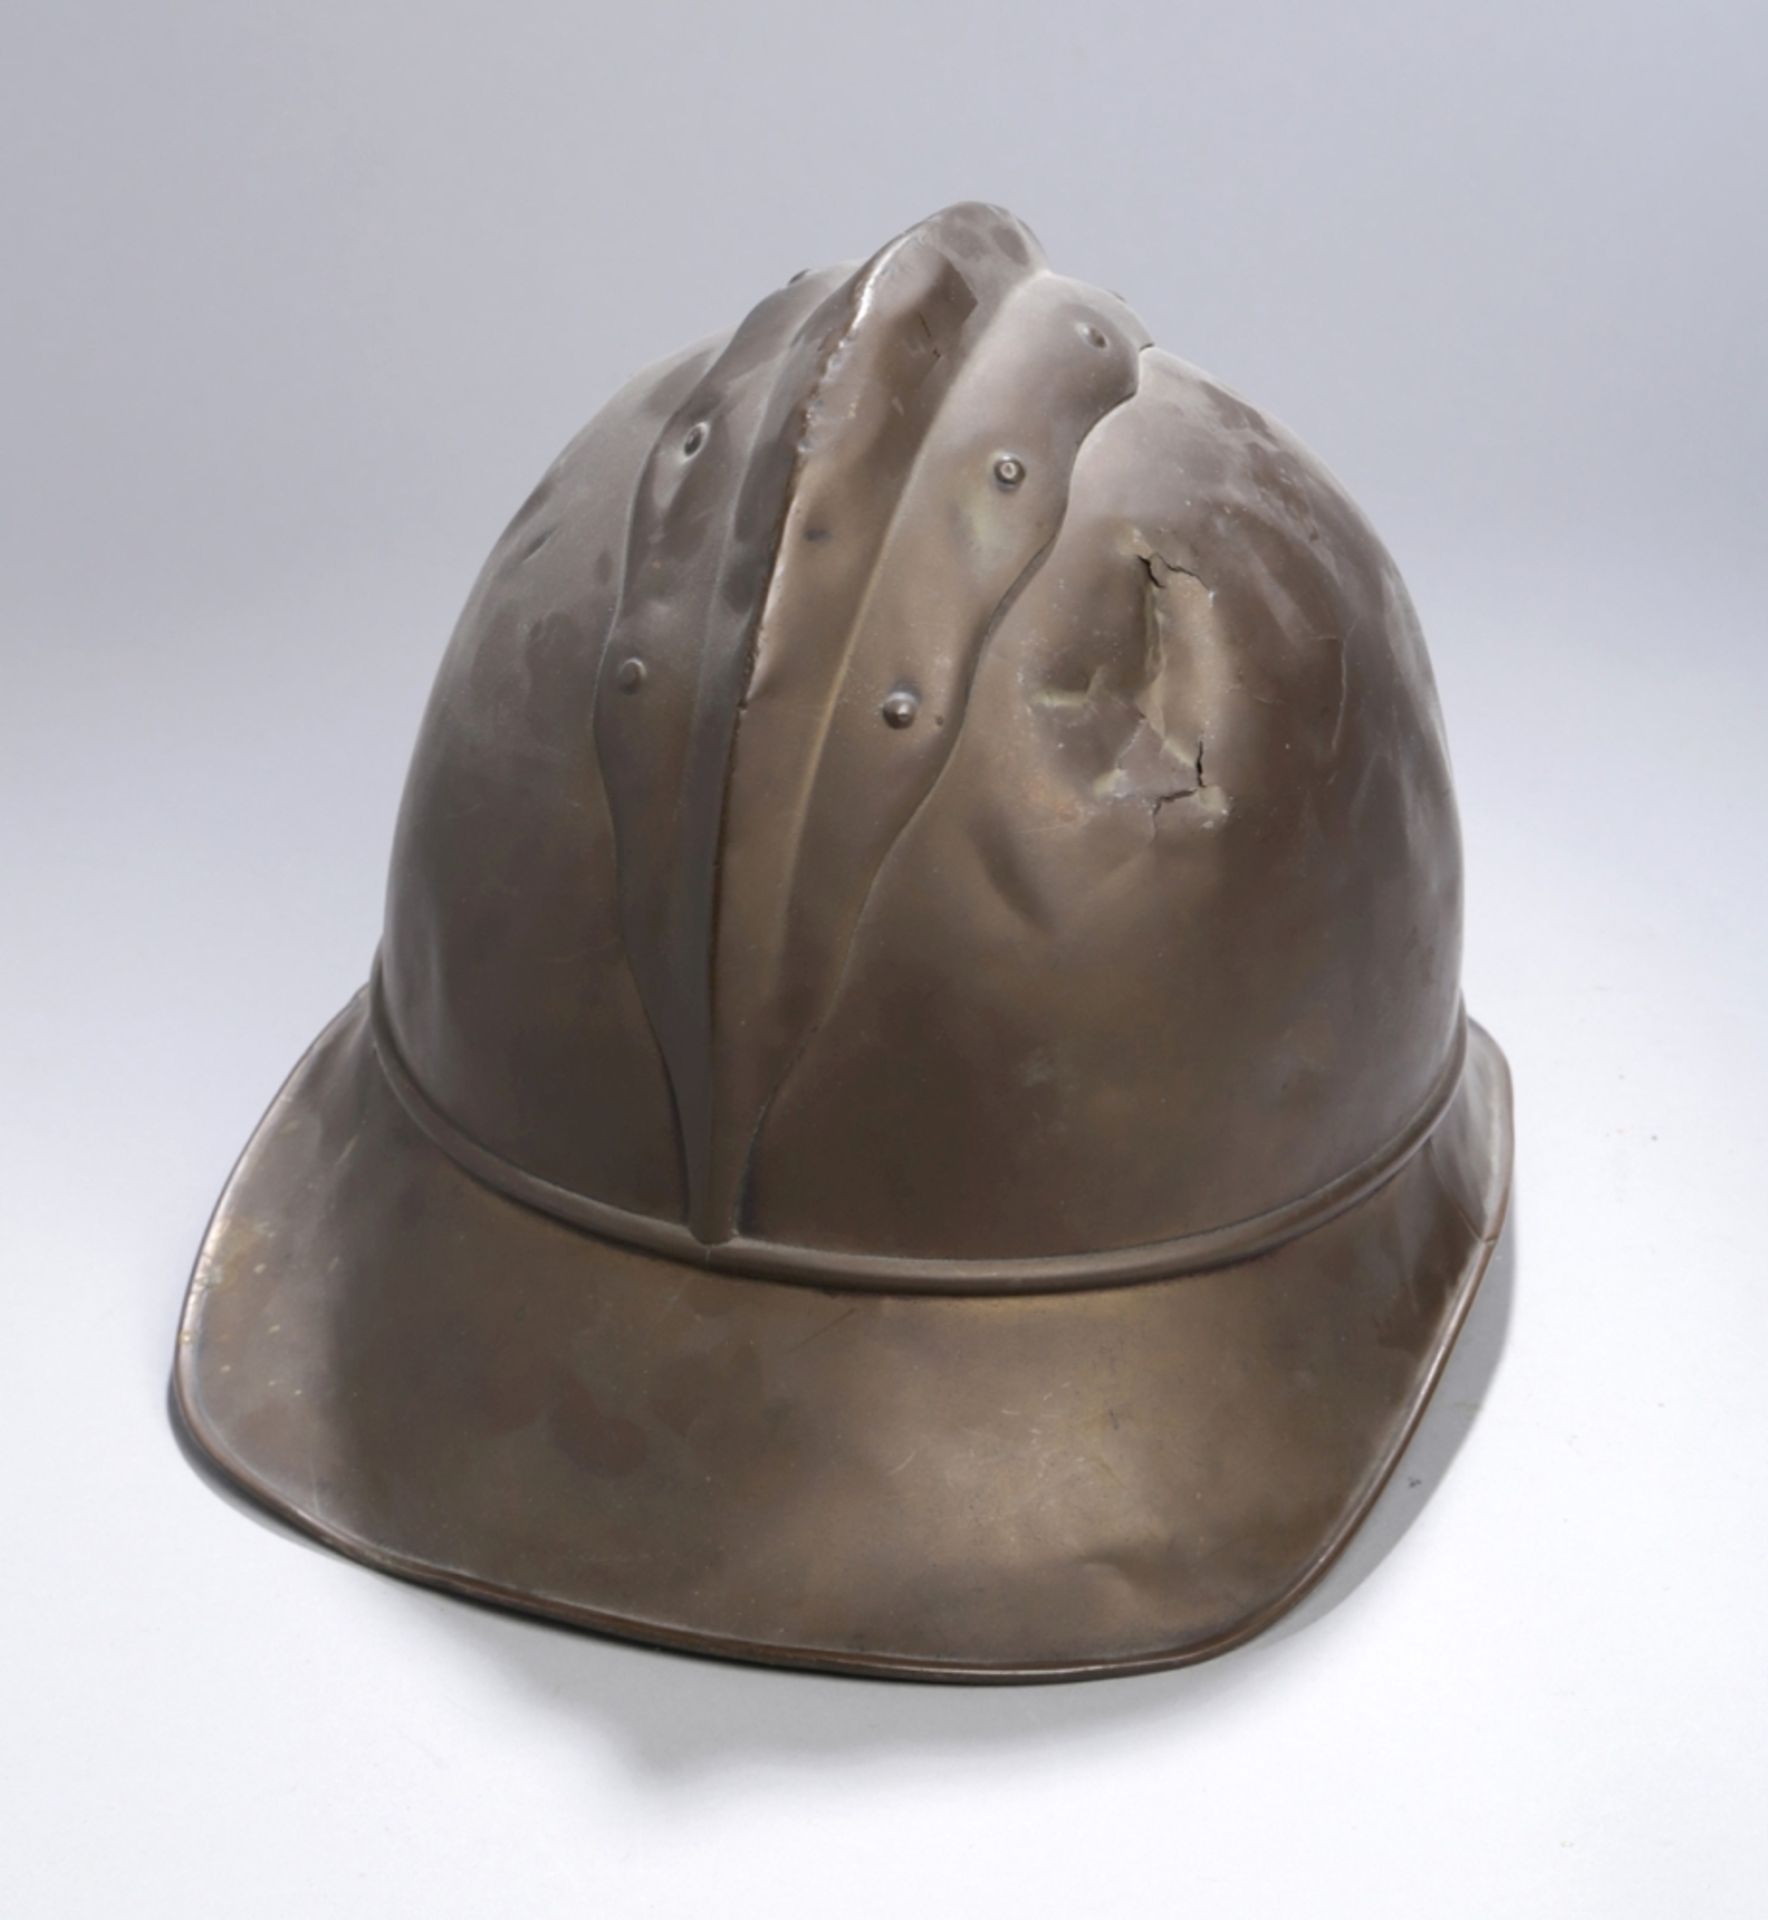 Feuerwehr-Helm, 19. Jh., Messing, H 20 cm, teilw. mit Dellen und Bruchstellen, gebrauchterZusta